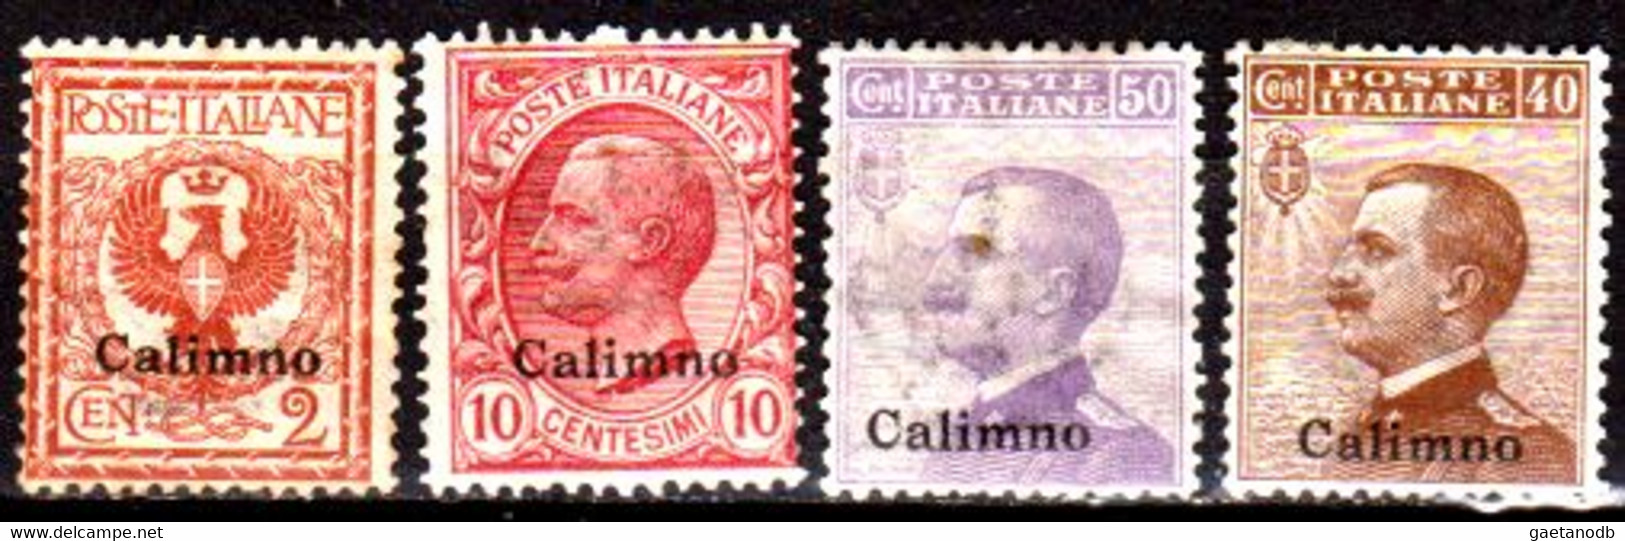 Italia-G 1101 - Colonie Italiane - Egeo: Calino 1912 (++/+) MNH/Hinged - Qualità A Vostro Giudizio. - Aegean (Calino)